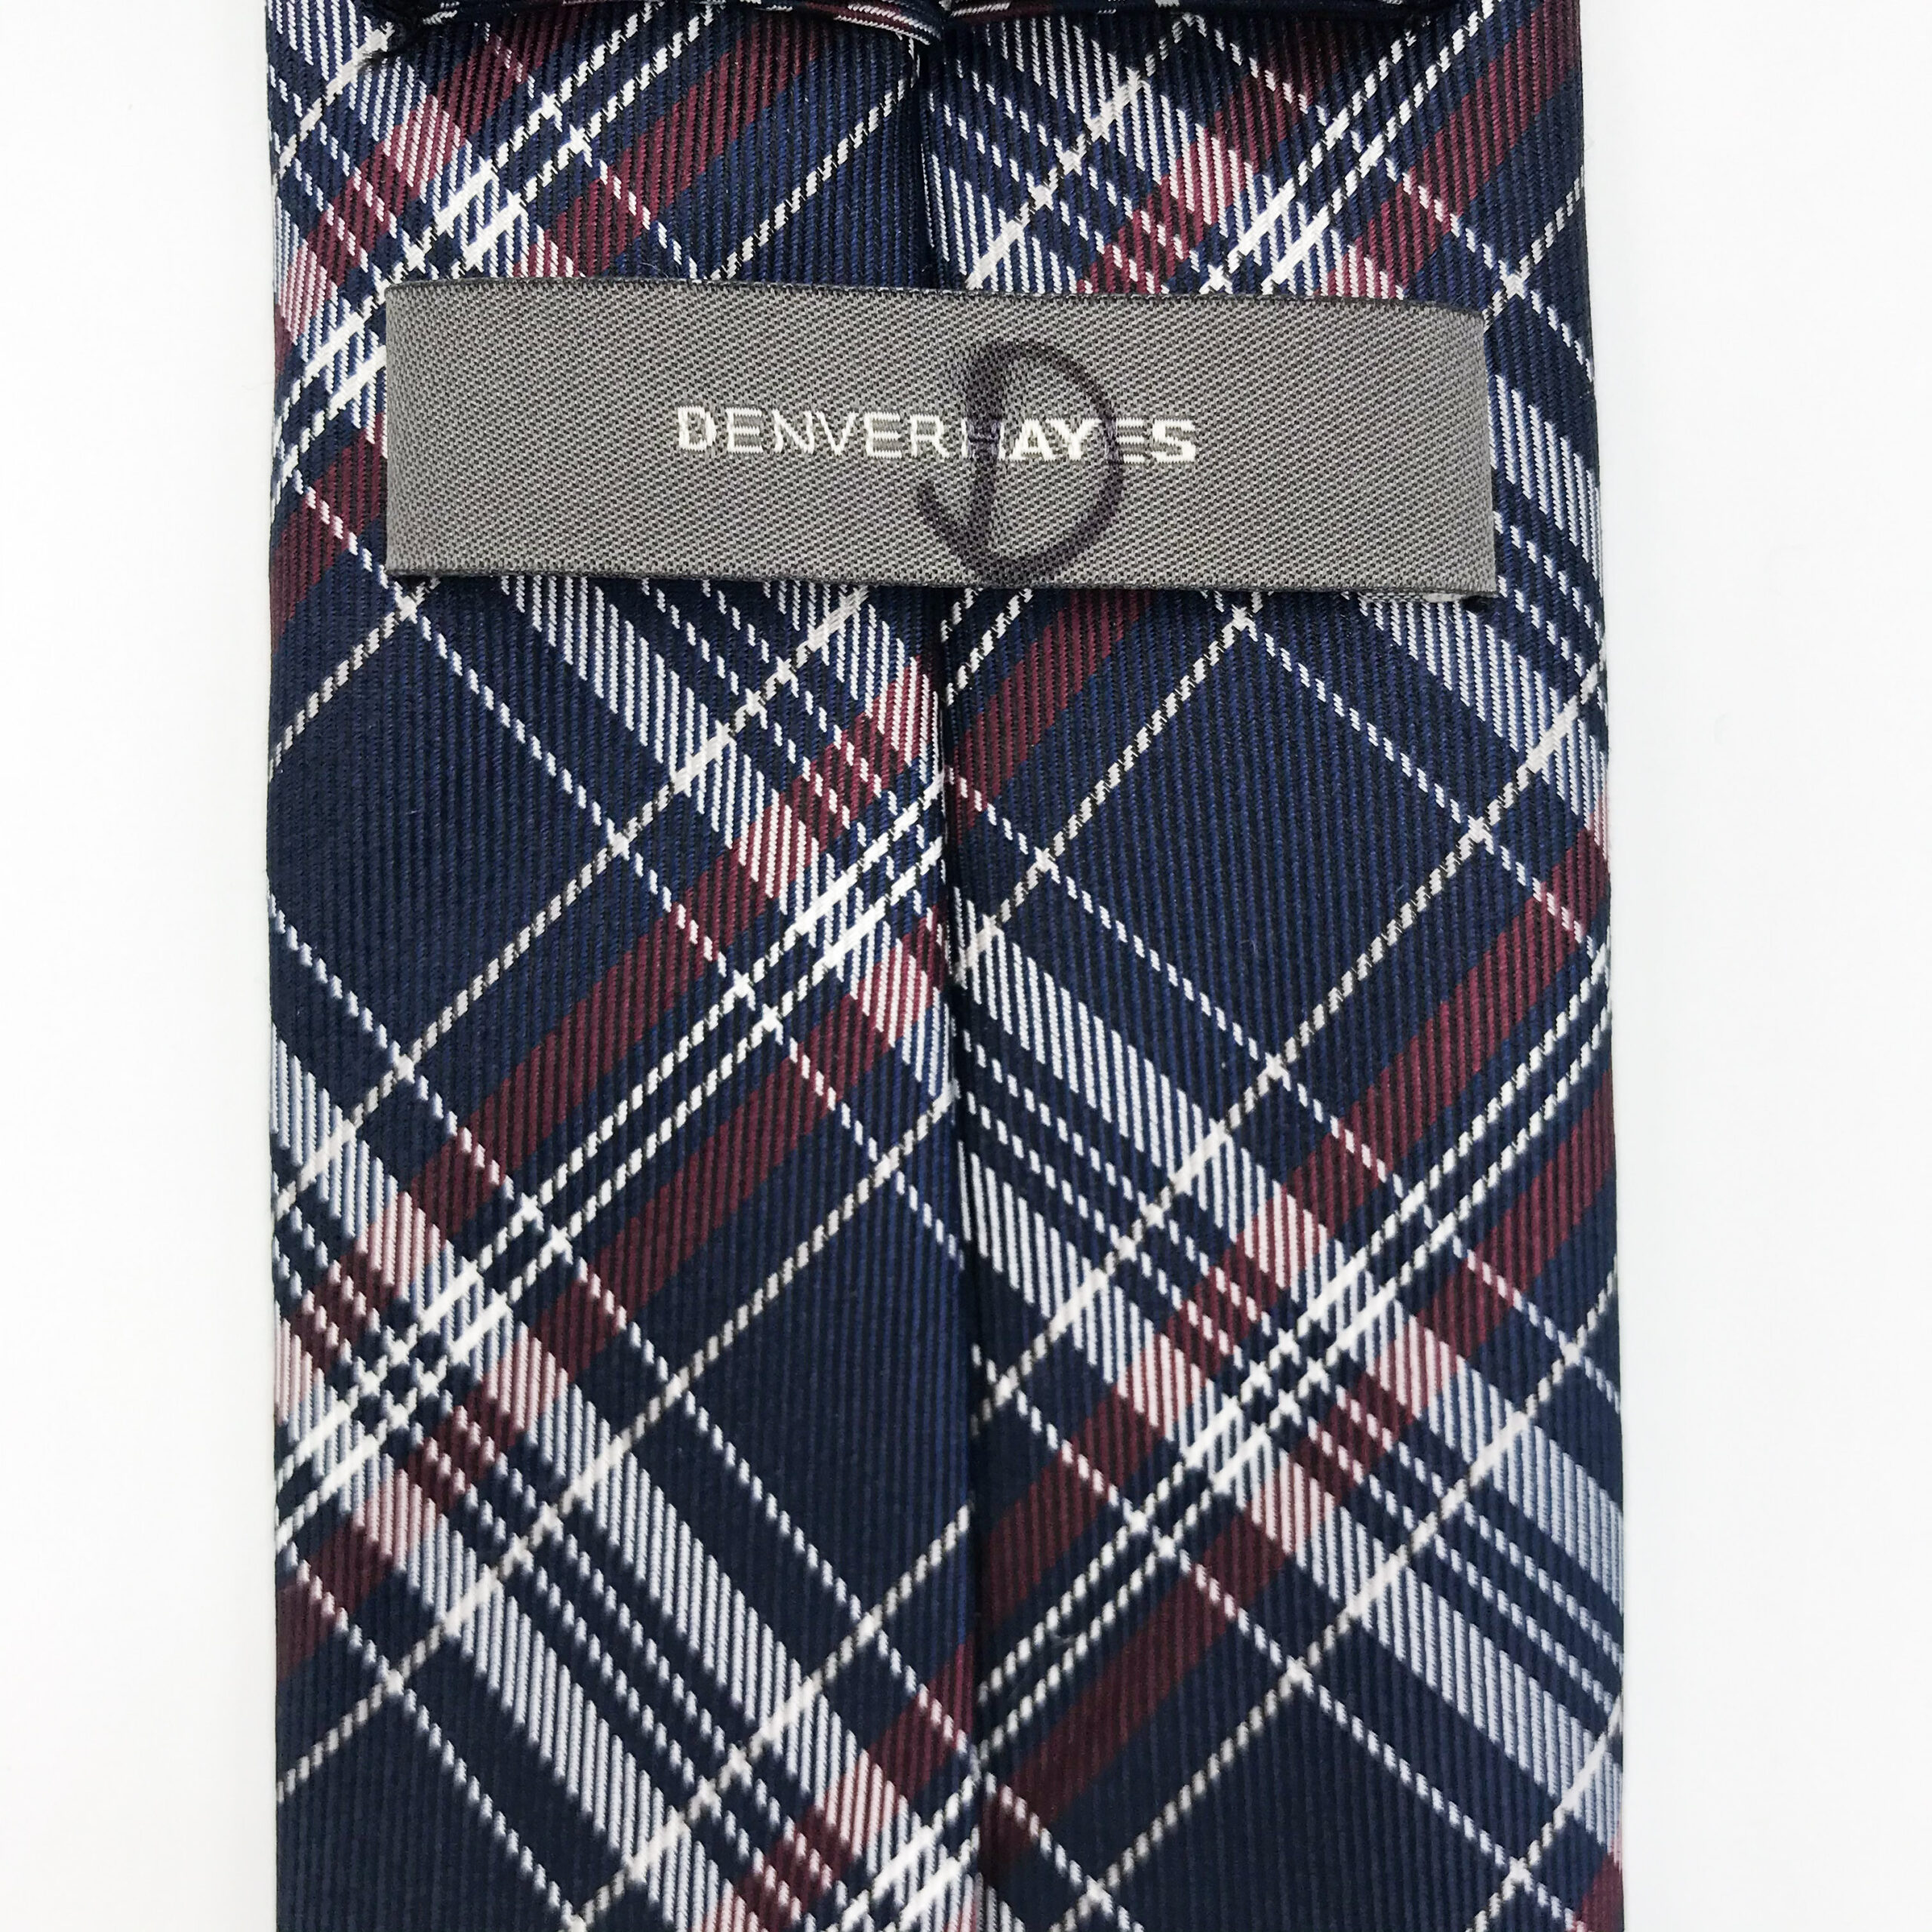 Denver Hayes Tie